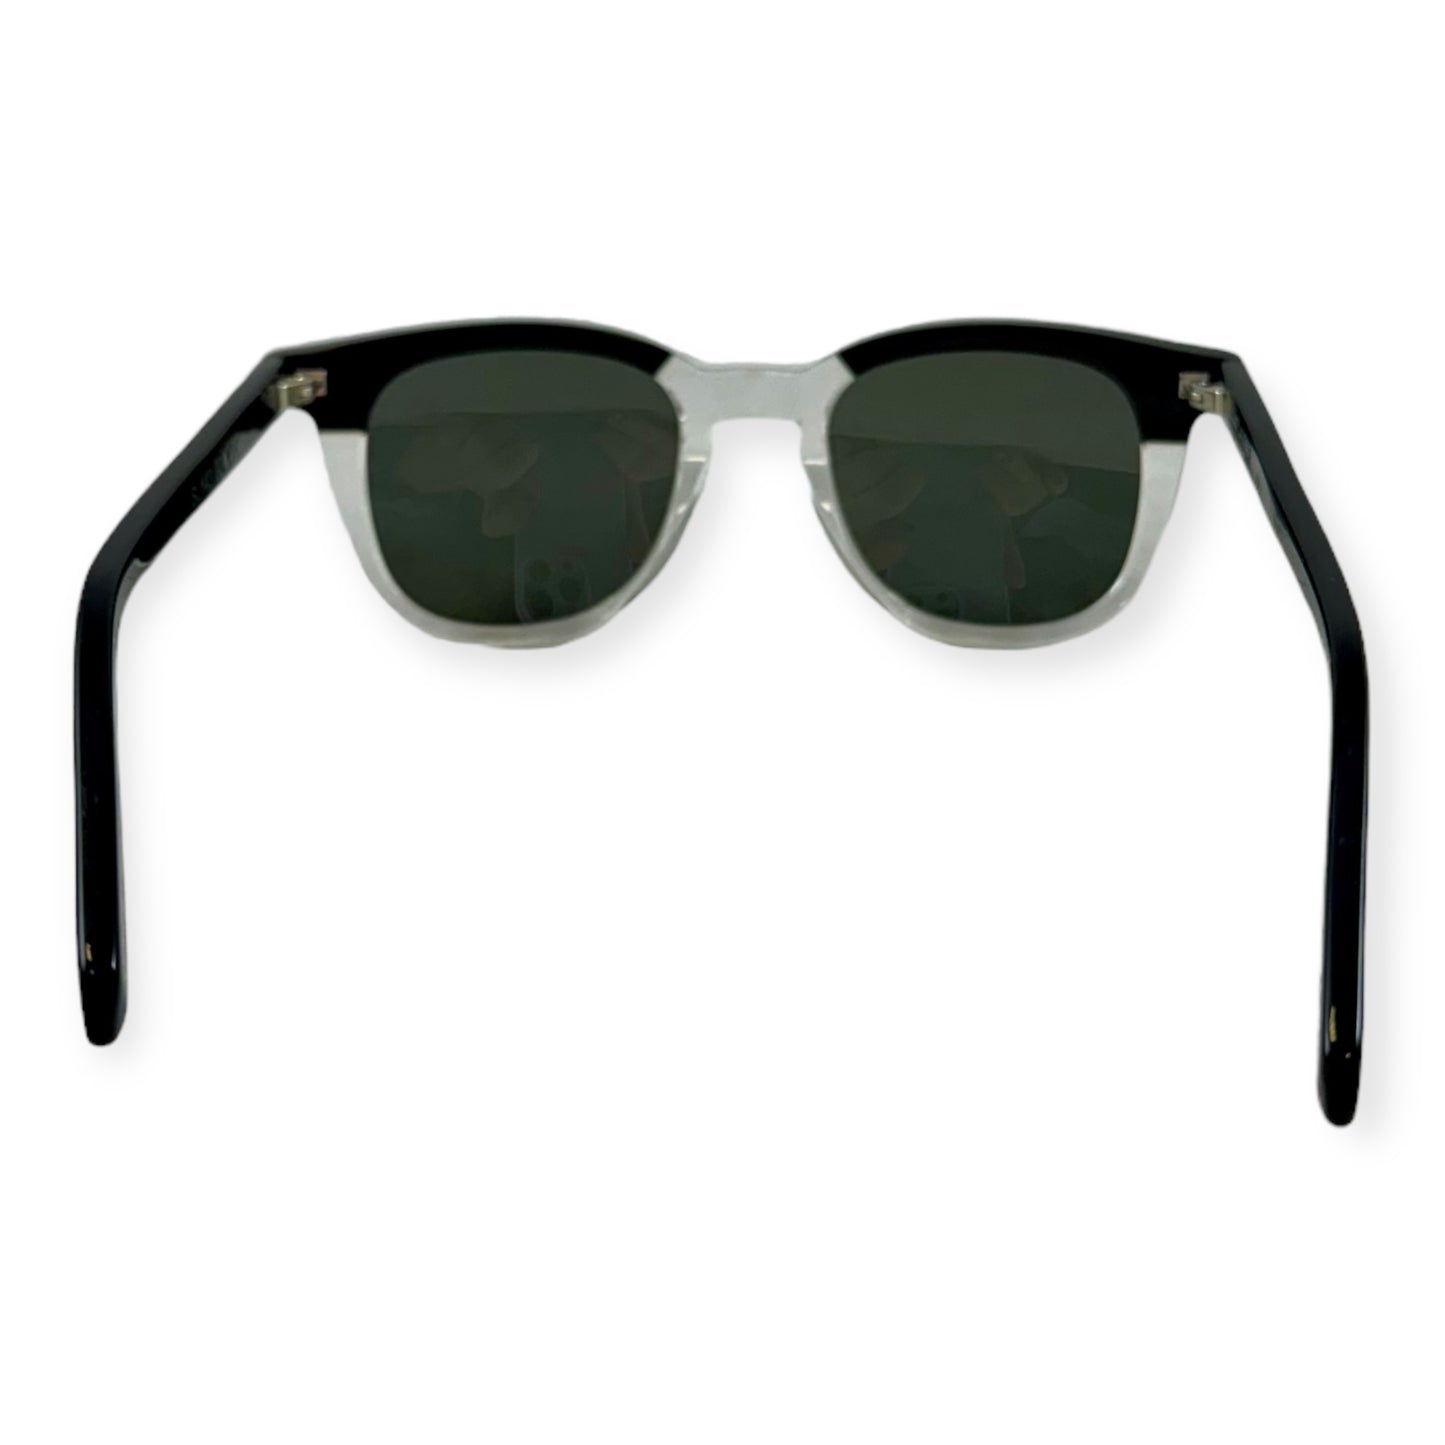 SAINT LAURENT SL143 Sunglasses in Black